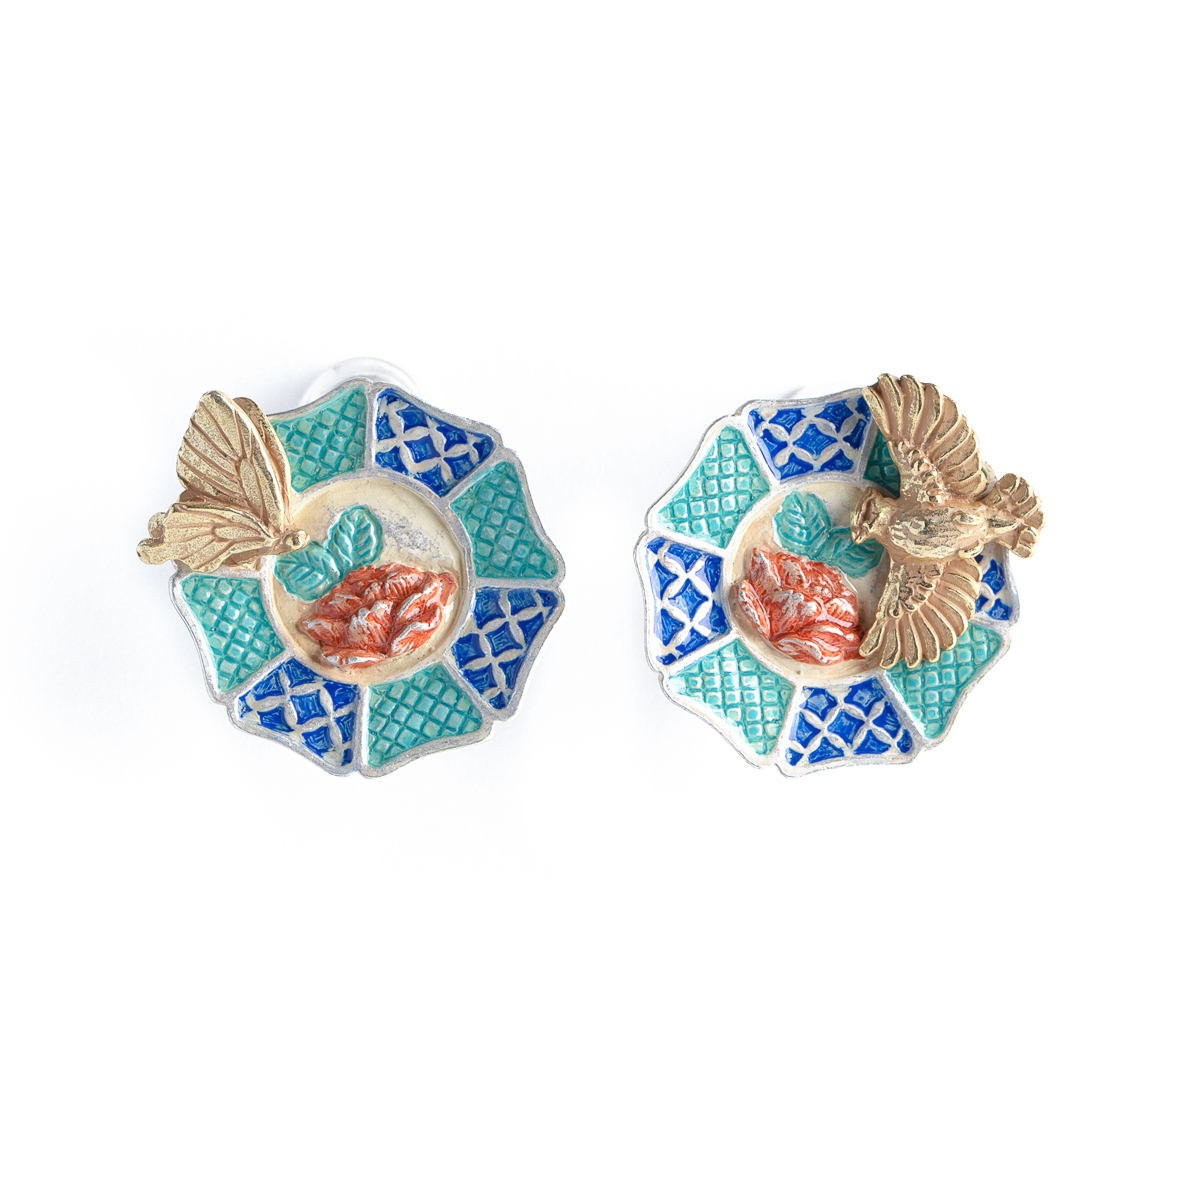 牡丹蝶禽イヤリング /  Peonies, Butterfly, and Bird Clip Earrings